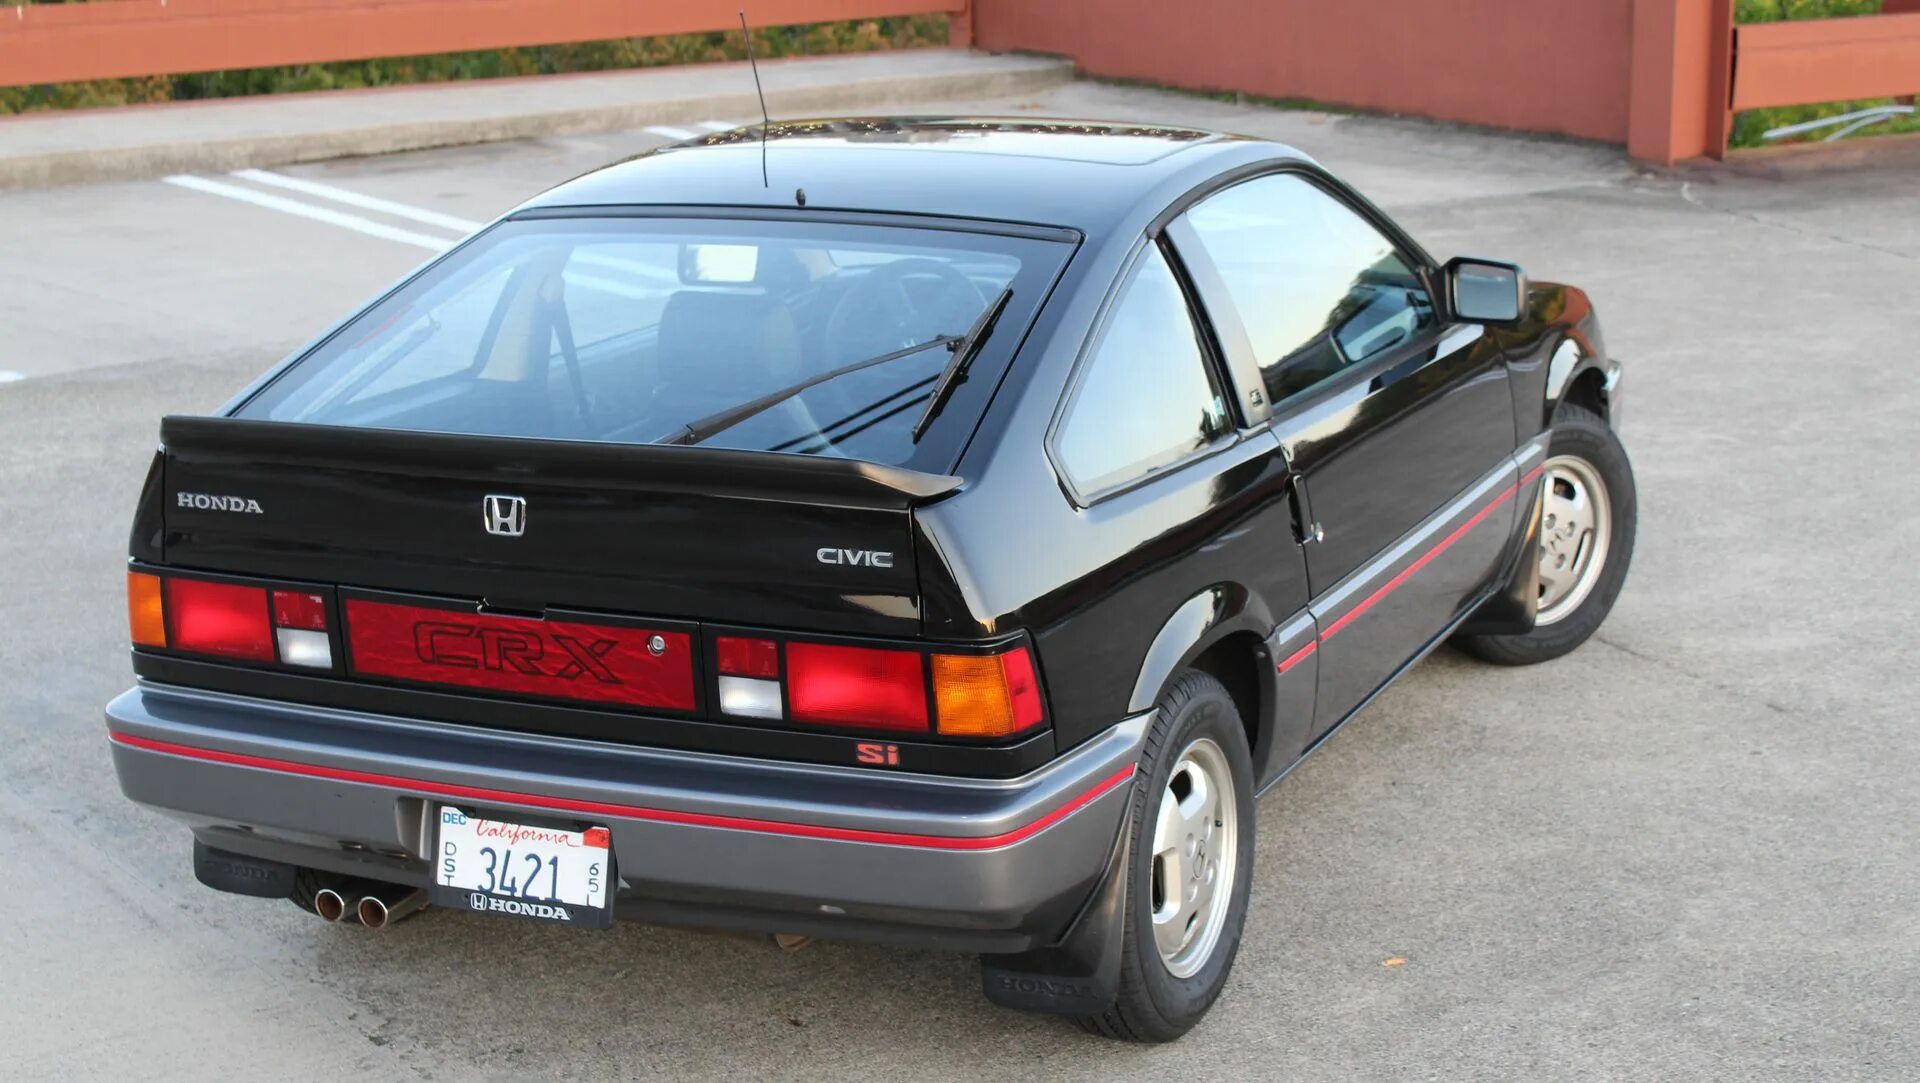 Honda Civic CRX 1985. Хонда CR X 1985. Honda Civic CRX si 1986. Honda CRX 1. Хонда 1986